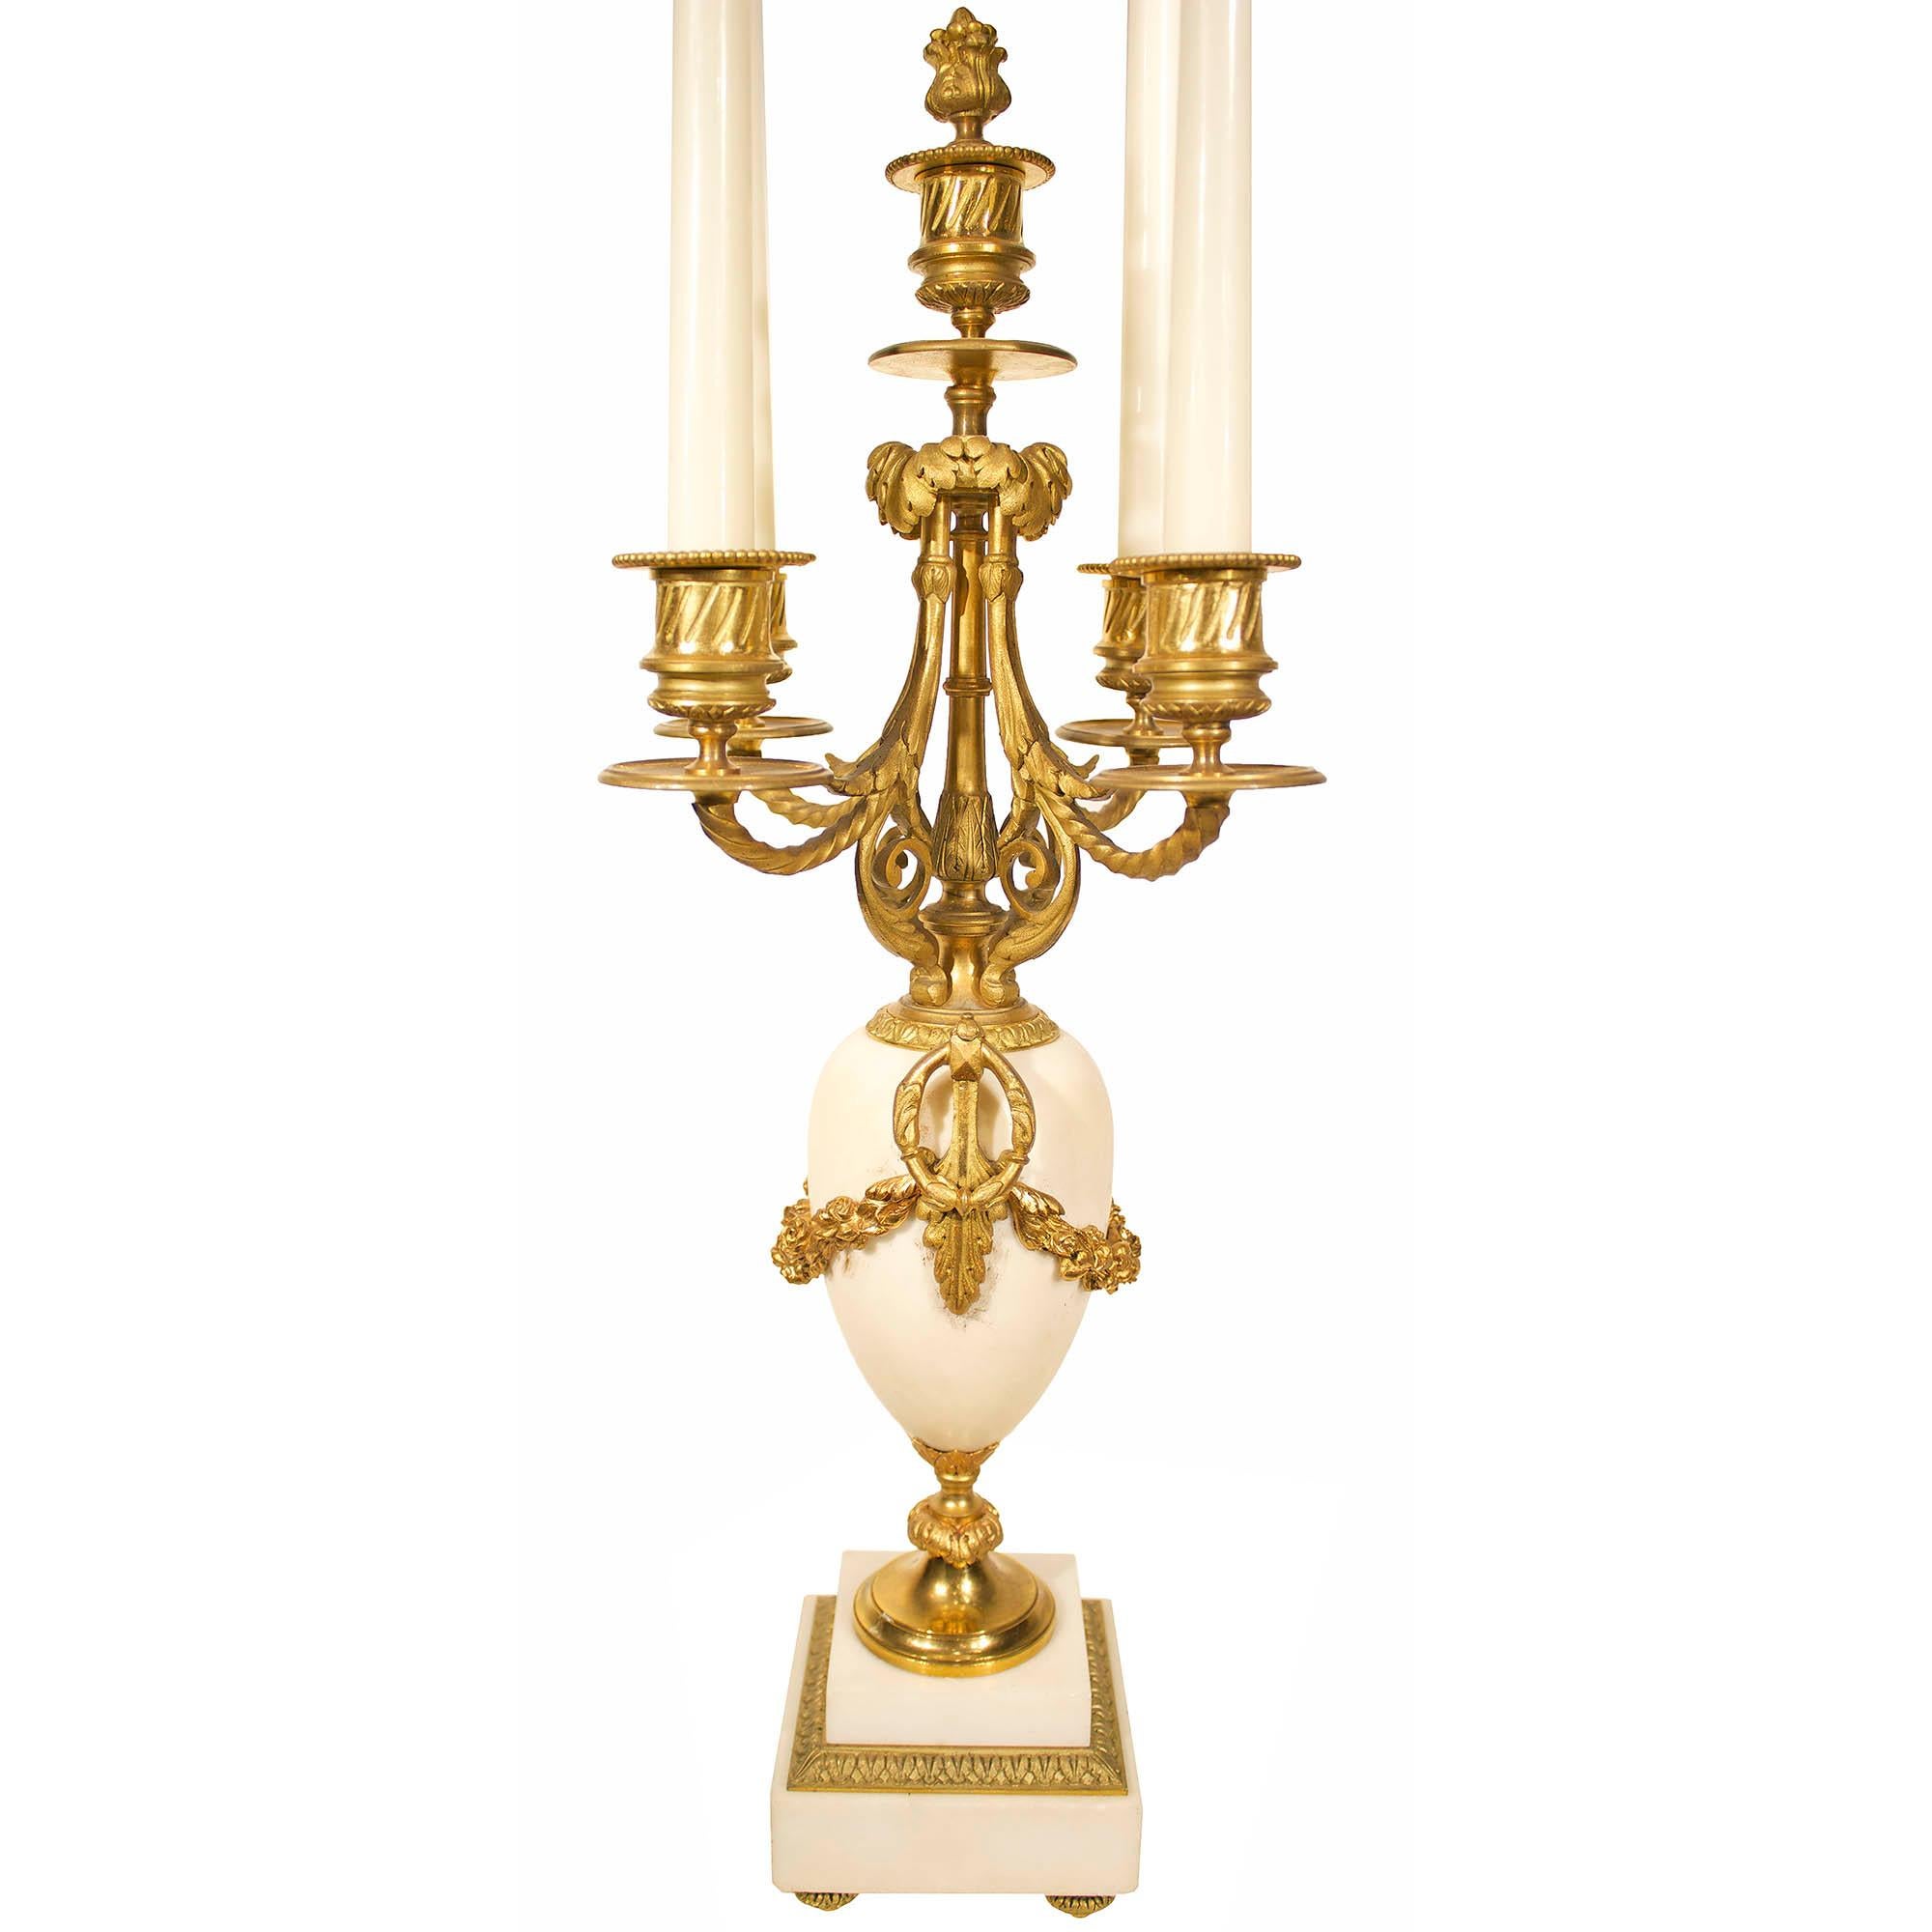 Une belle paire de candélabres français du milieu du 19ème siècle, de style Louis XVI, en marbre blanc de Carrare et bronze doré. Chacun d'eux est surélevé par une base carrée en marbre au-dessus de quatre supports en bronze ciselé et doré.